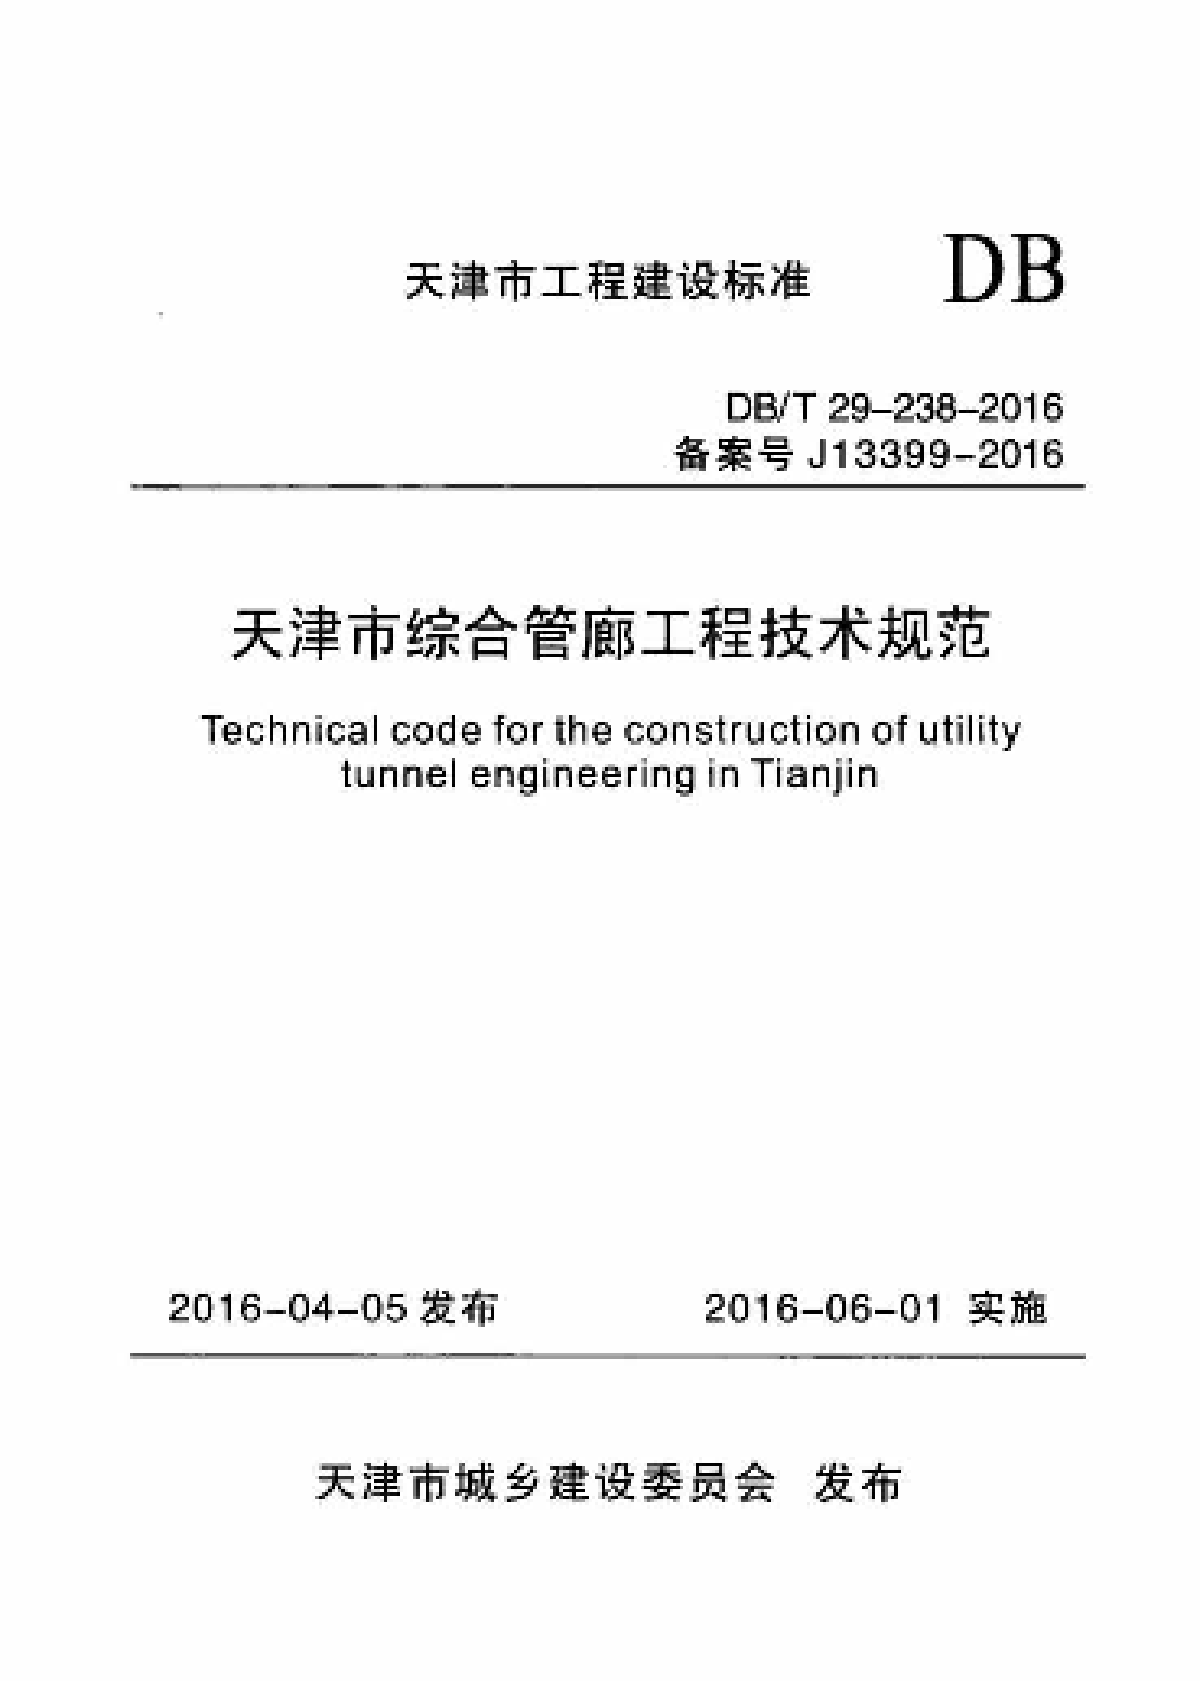 DBT29-238-2016 天津市综合管廊工程技术规范